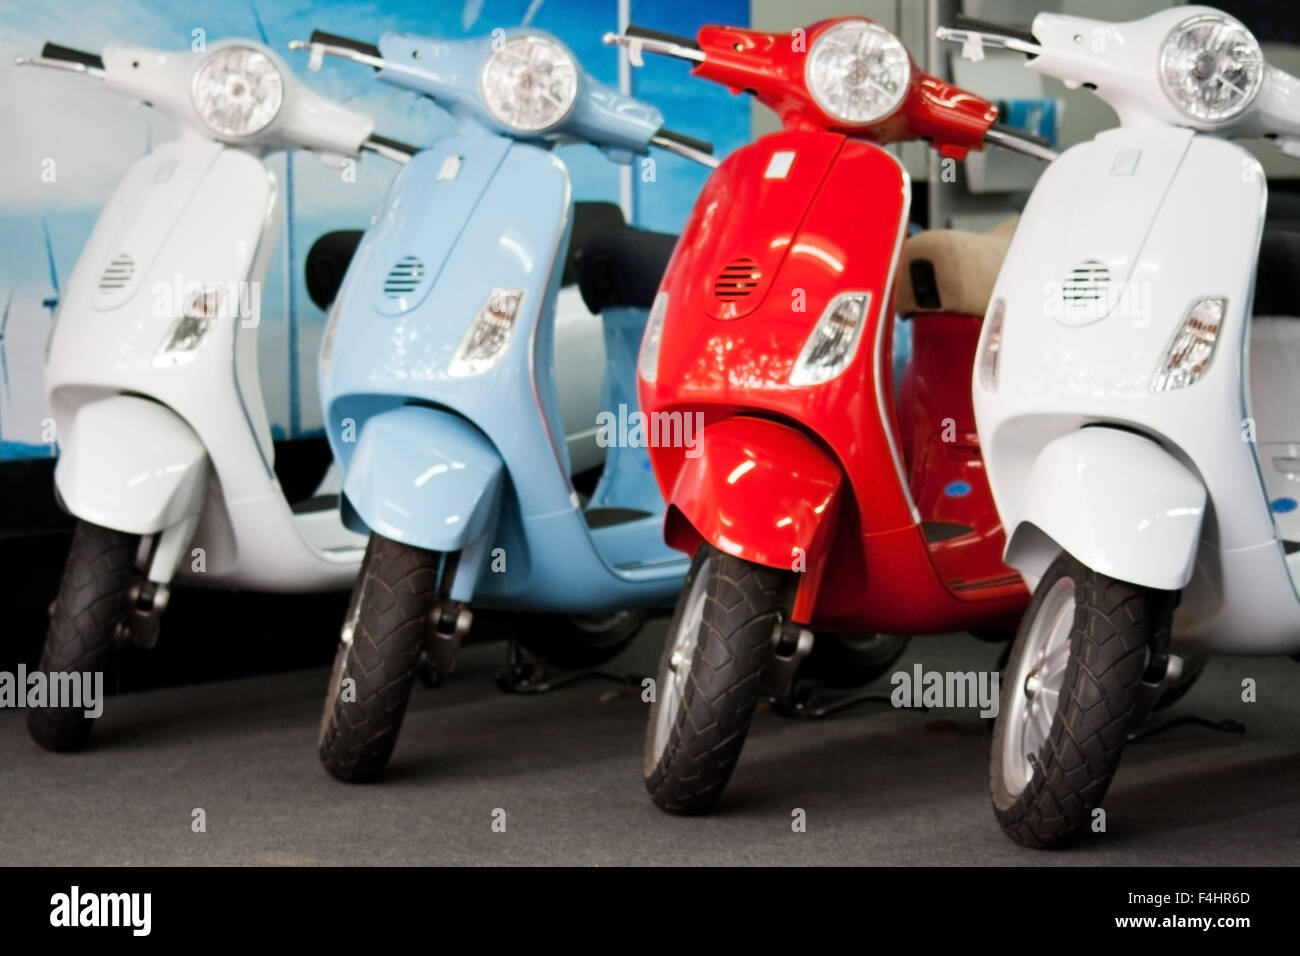 Cuatro de diferentes colores Vespa Scooters en showroom, nuevos, impecables, inmaculadas, fresco, elegante y con estilo italiano icónico de los ciclomotores y modo de transporte Foto de stock